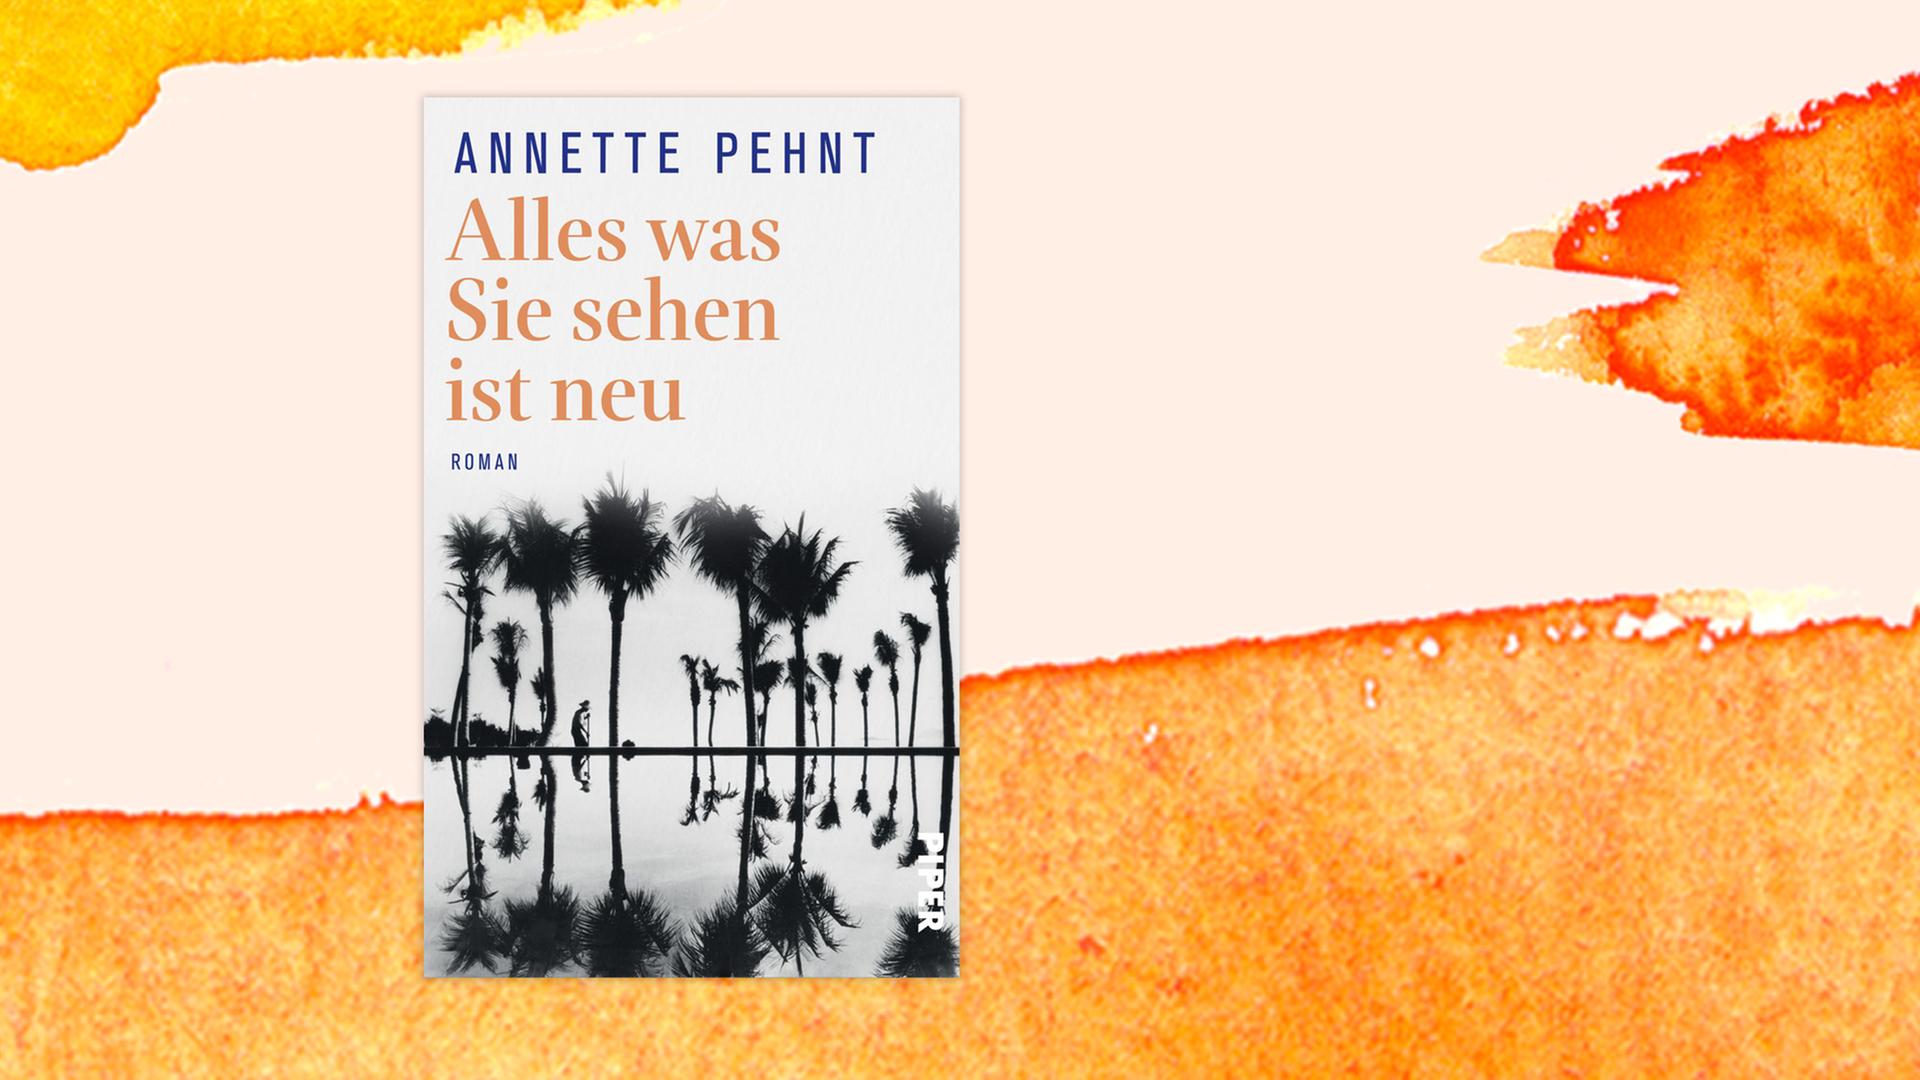 Buchcover zu Annette Pehnt: "Alles was Sie sehen ist neu"